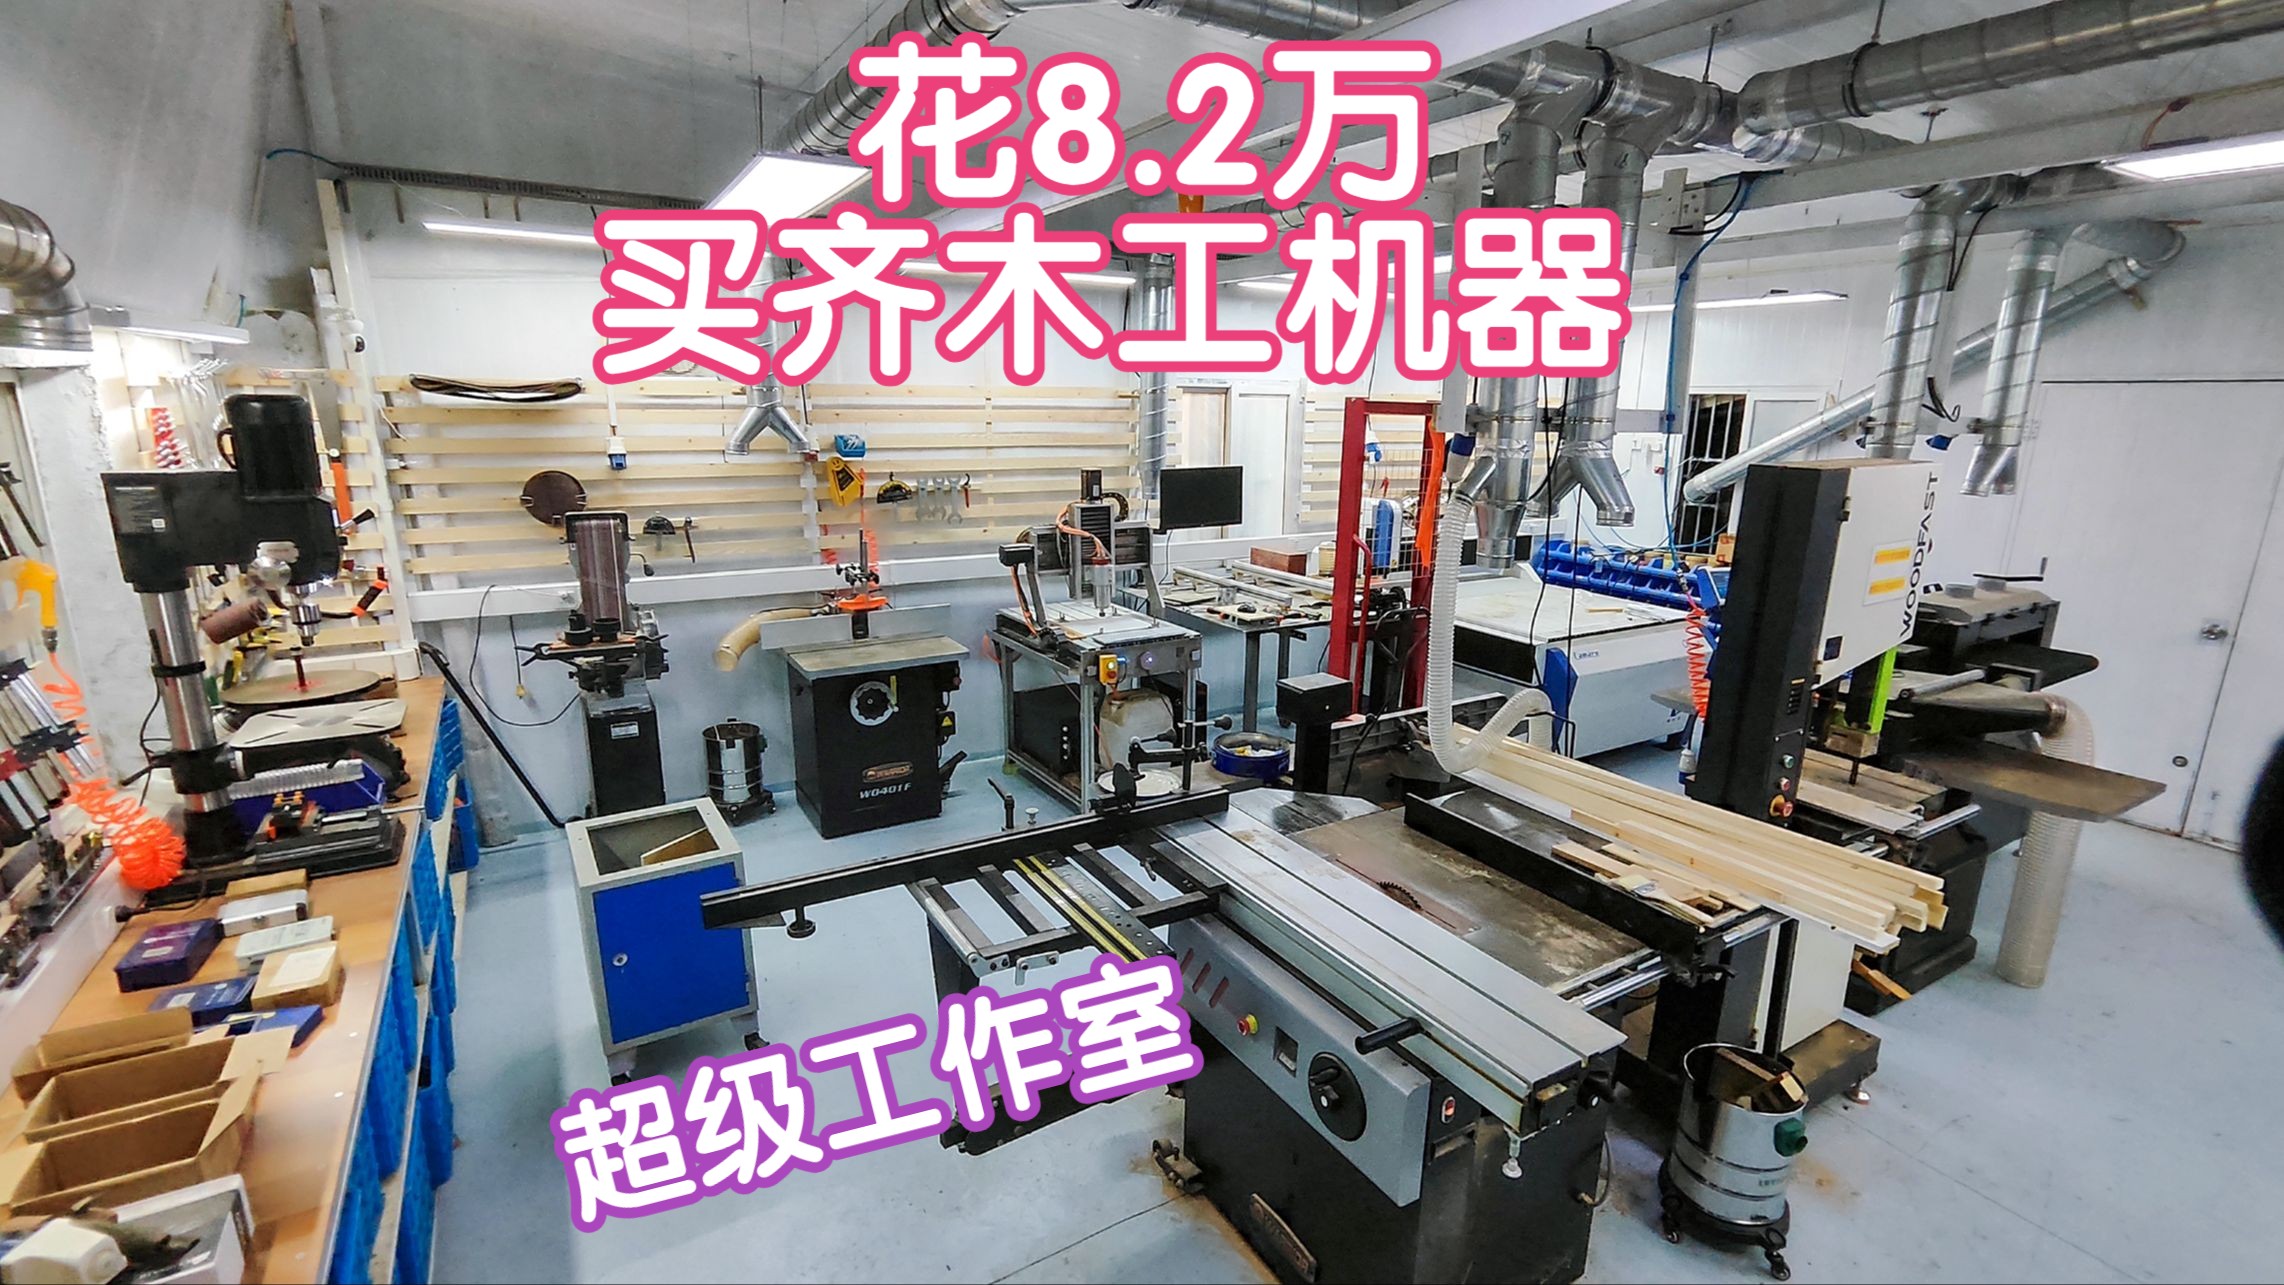 造一个梦想中的超级工作室-花8.2万买齐木工机器设备